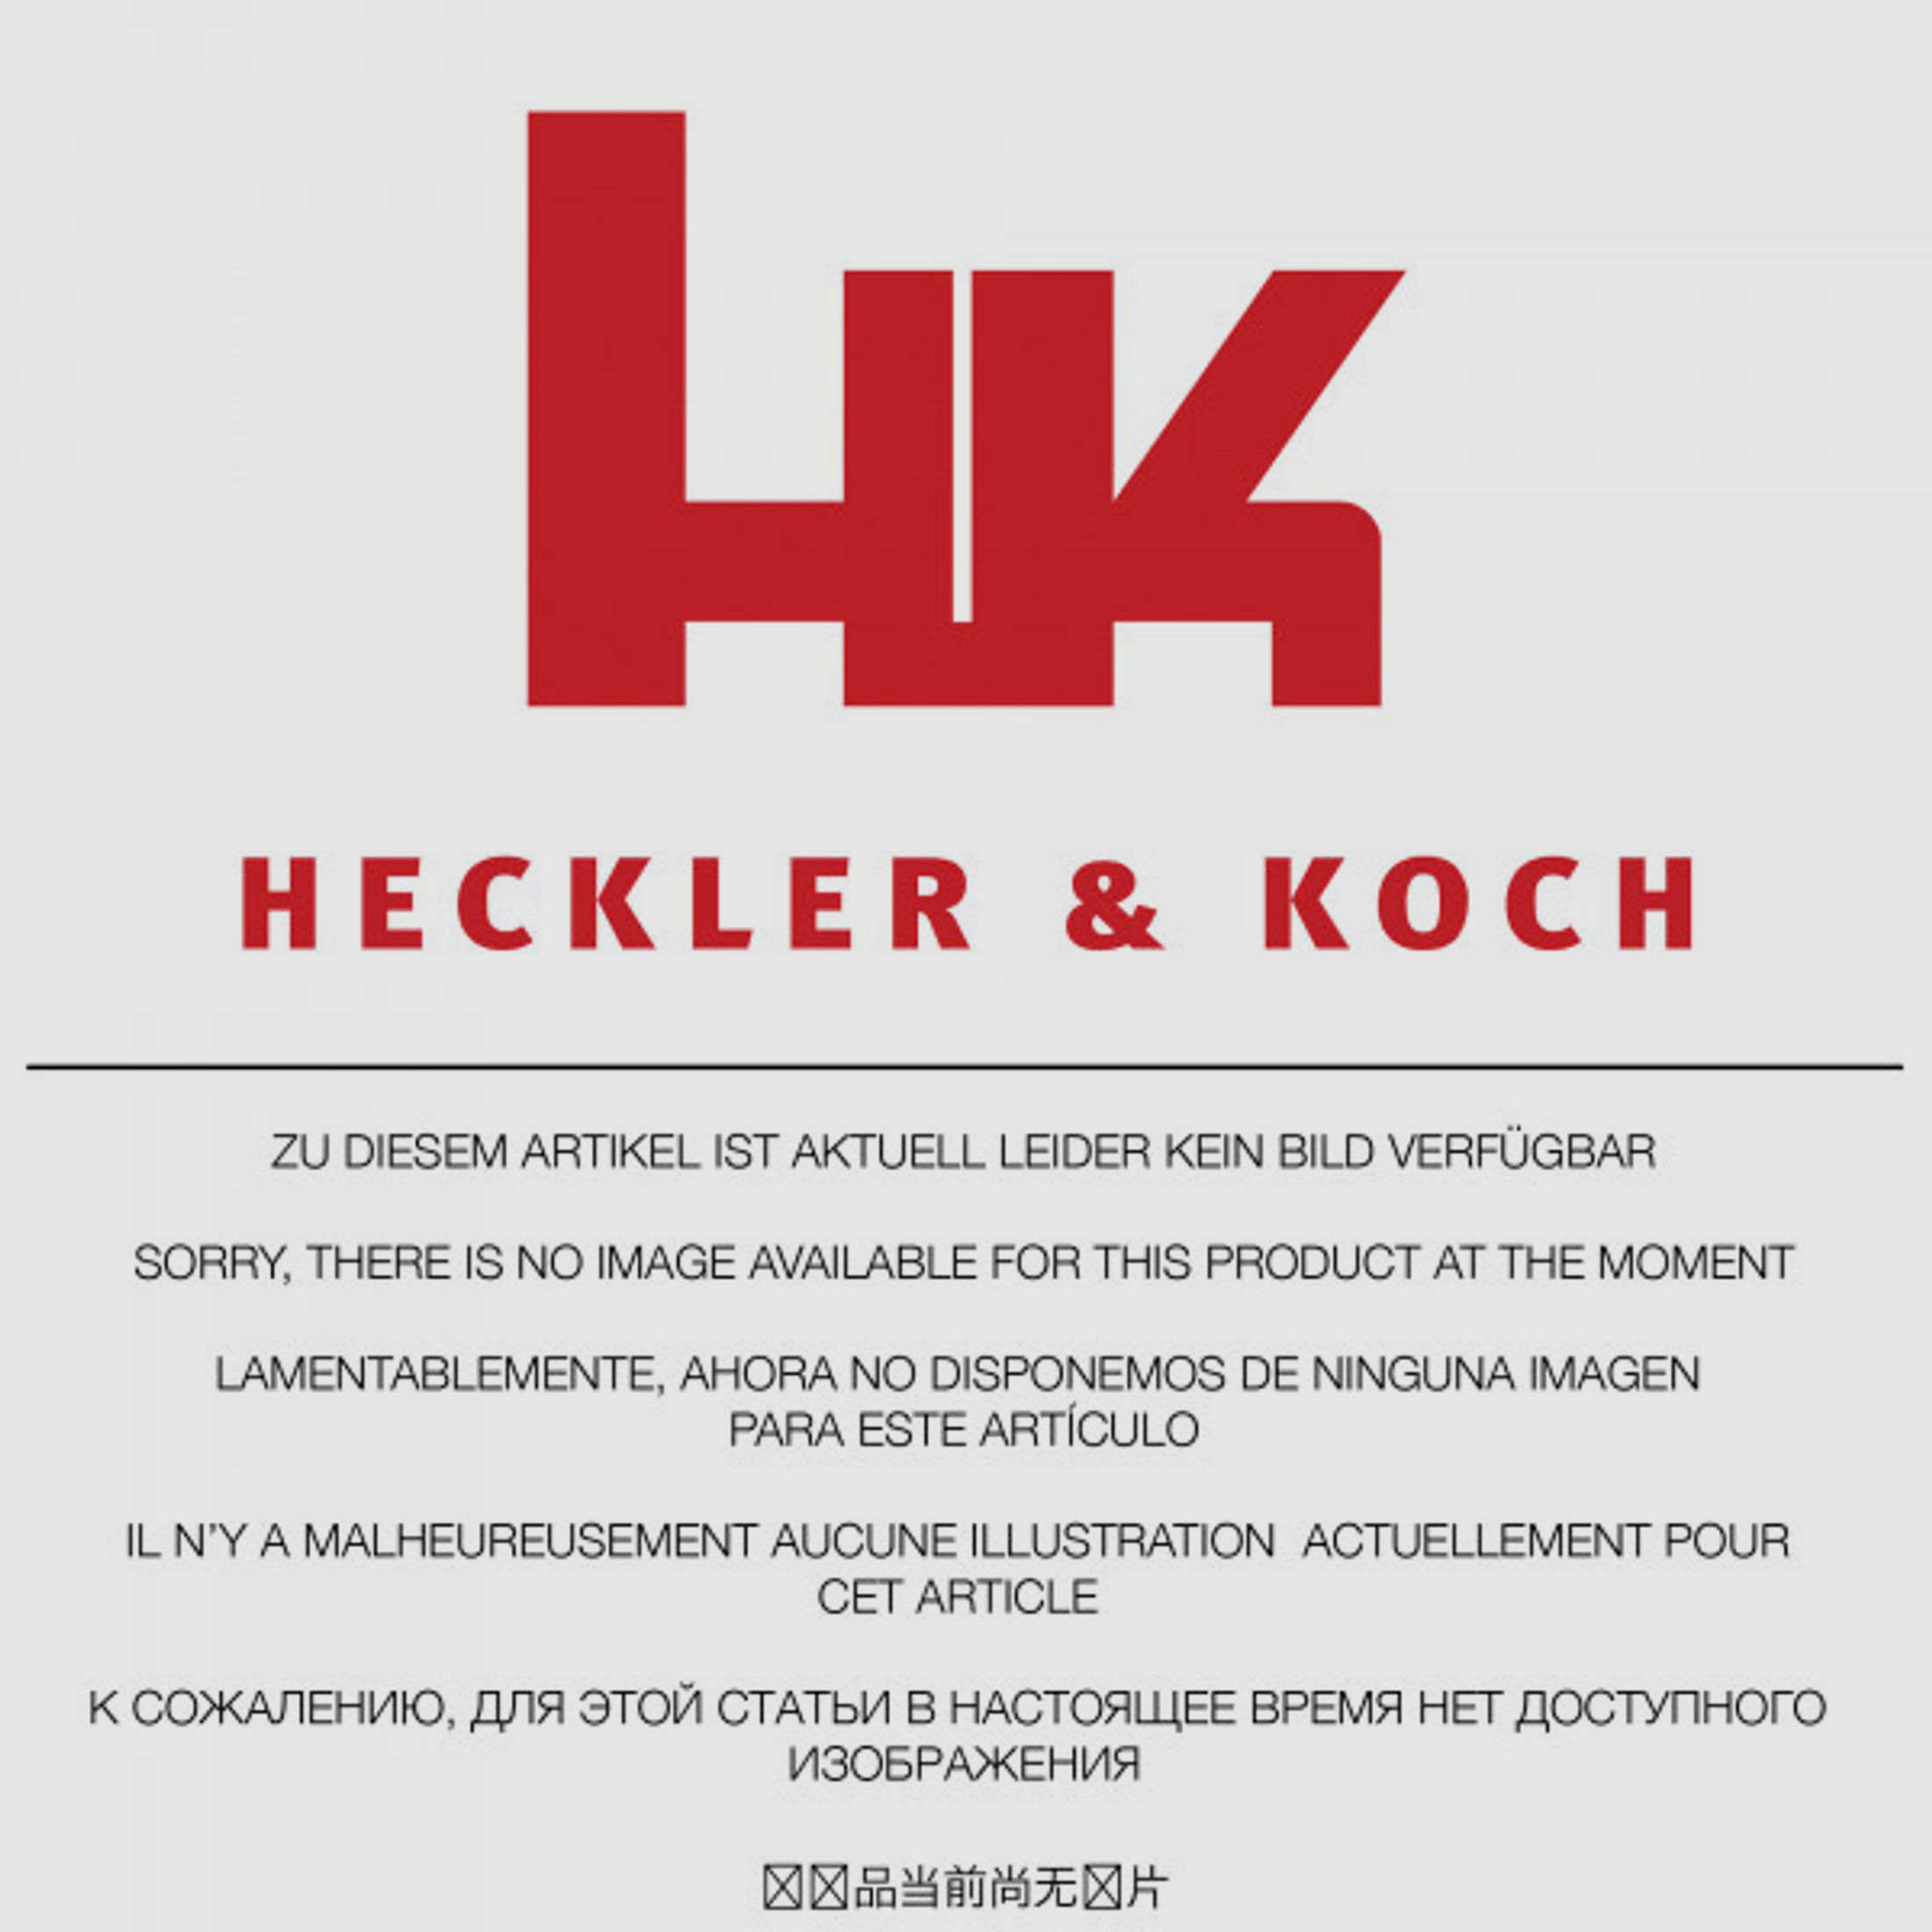 Heckler & Koch Gewindeschutz HK USP Tactical 9 mm